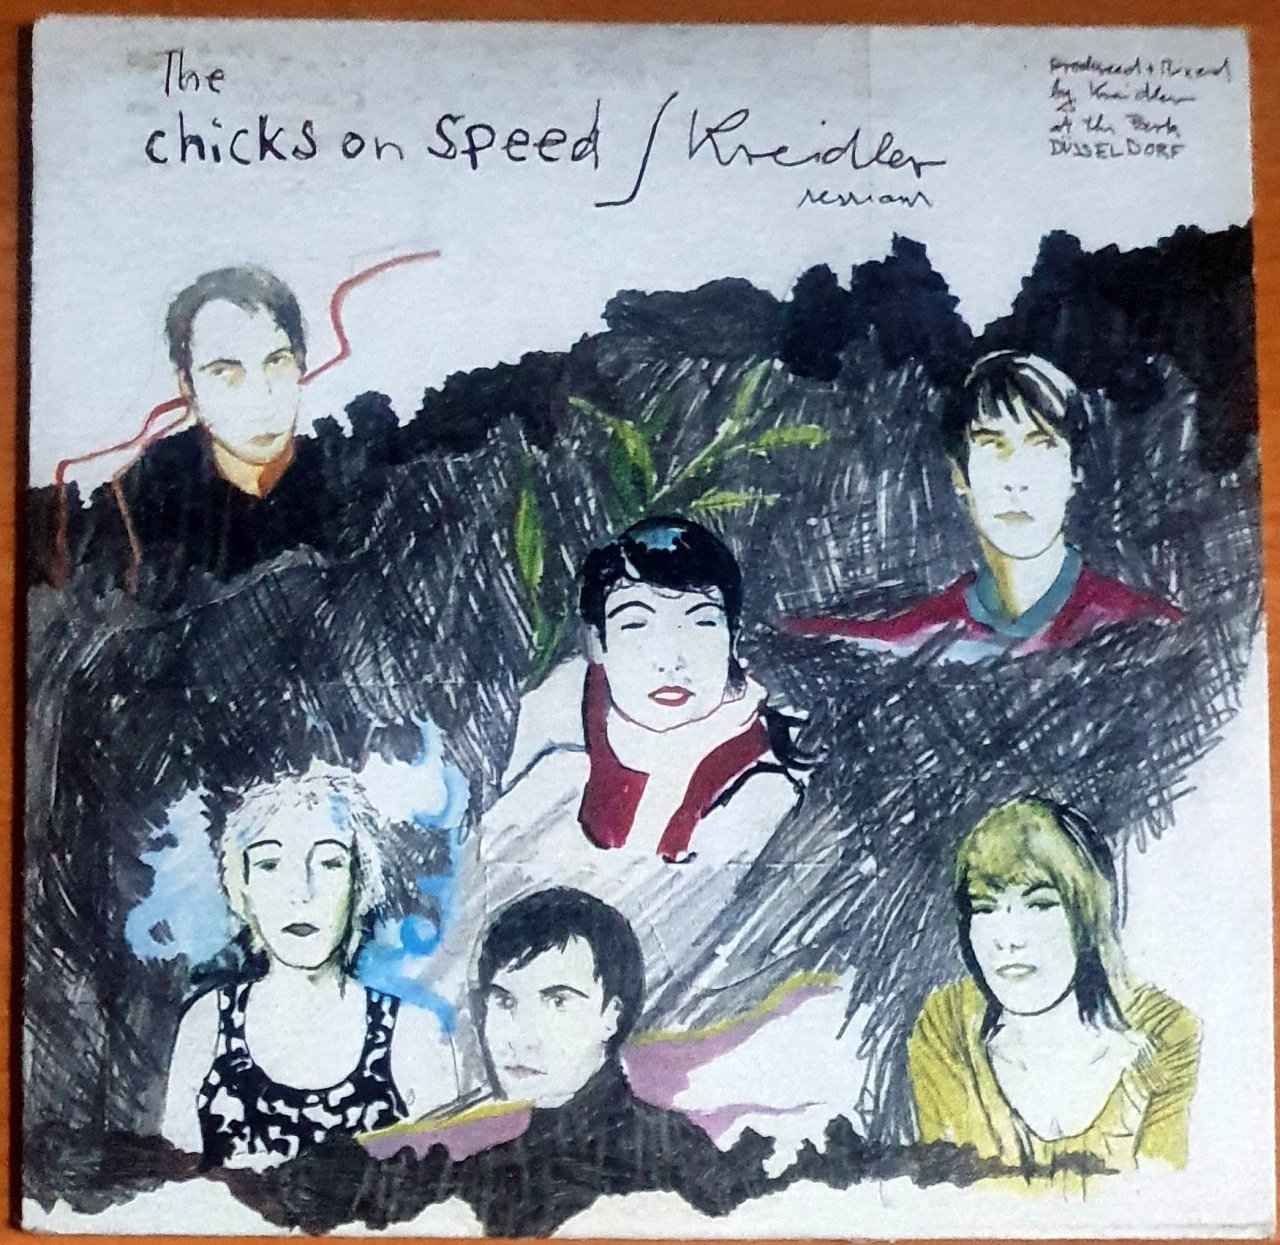 THE CHICKS ON SPEED / KREIDLER SESSION (2001) - CD 2.EL